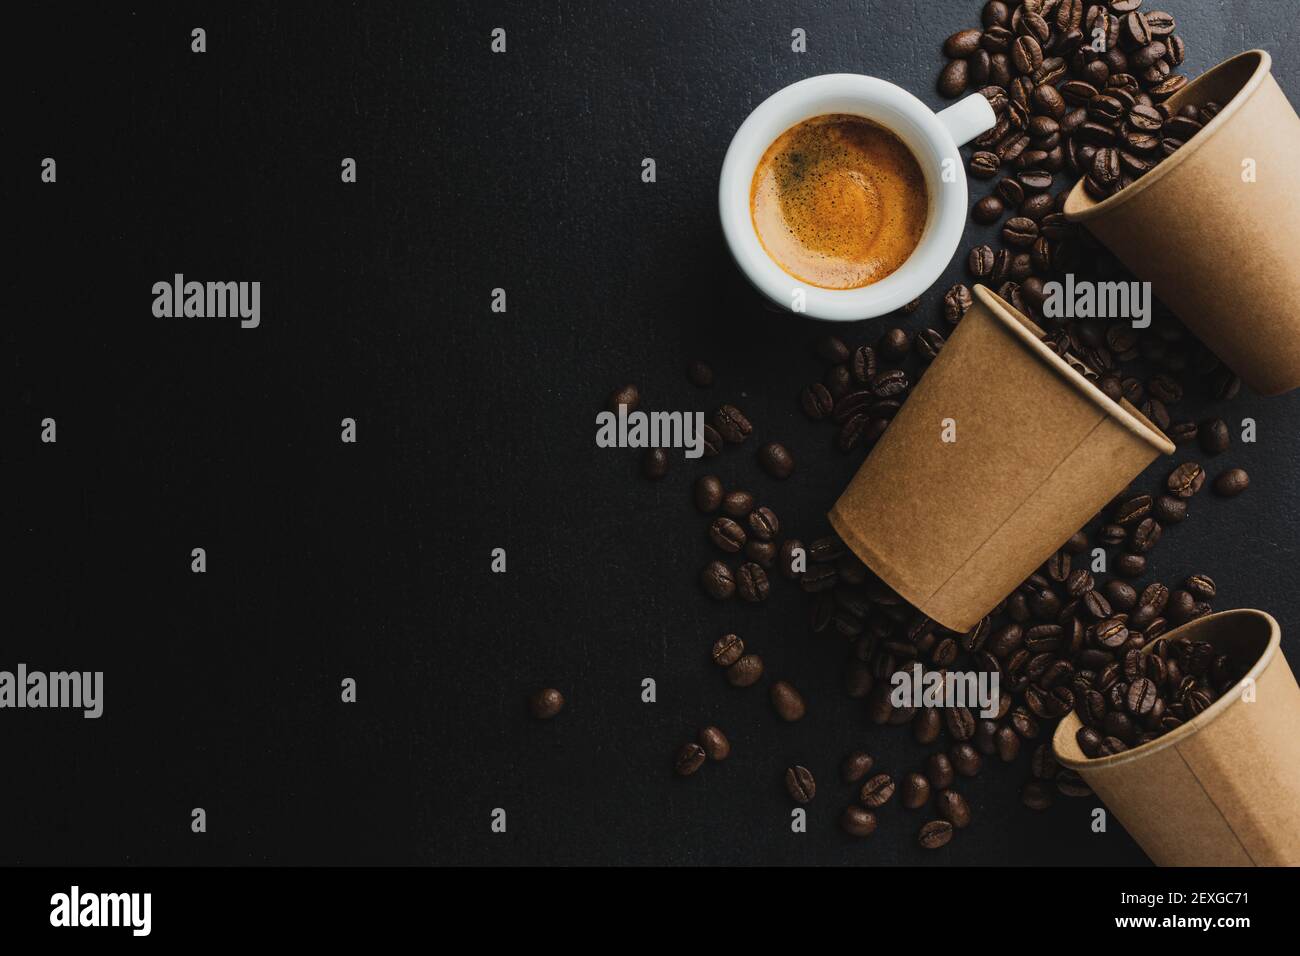 Concetto di caffè o zero sprechi. Chicchi di caffè in una tazza di carta con una tazza di caffè espresso su sfondo scuro. Foto Stock